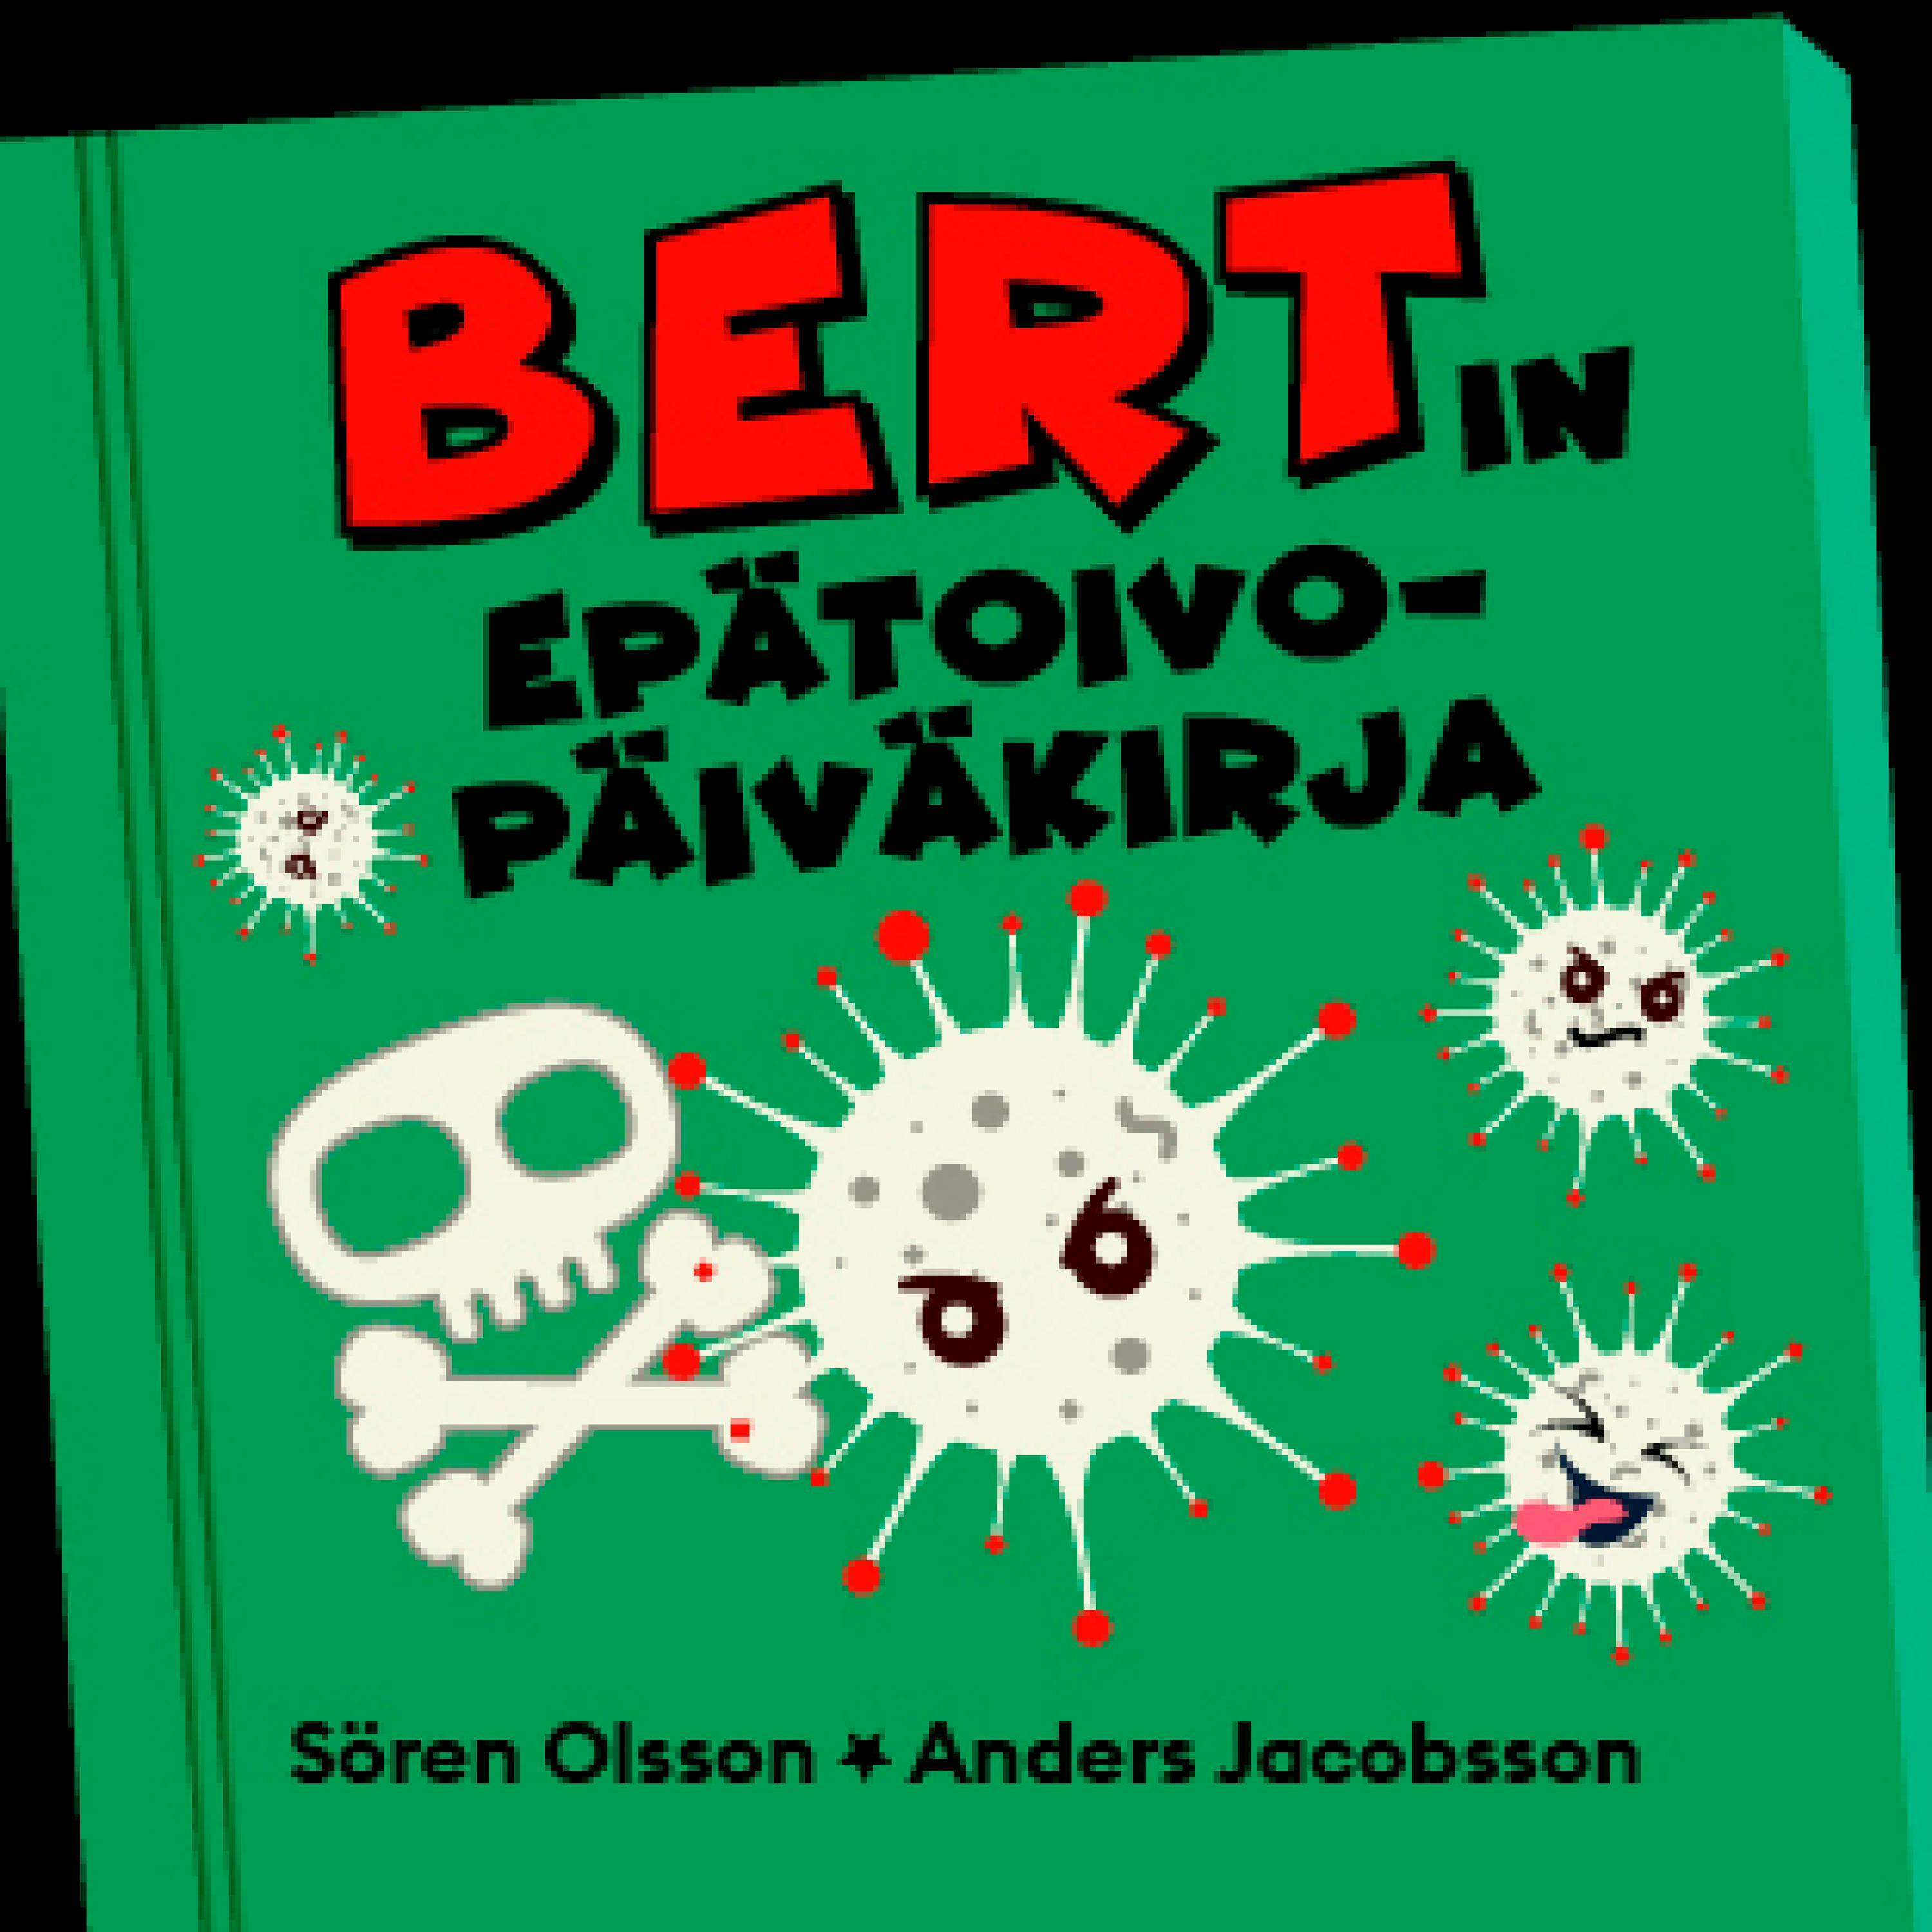 Bertin epätoivopäiväkirja - Sören Olsson, Anders Jacobsson